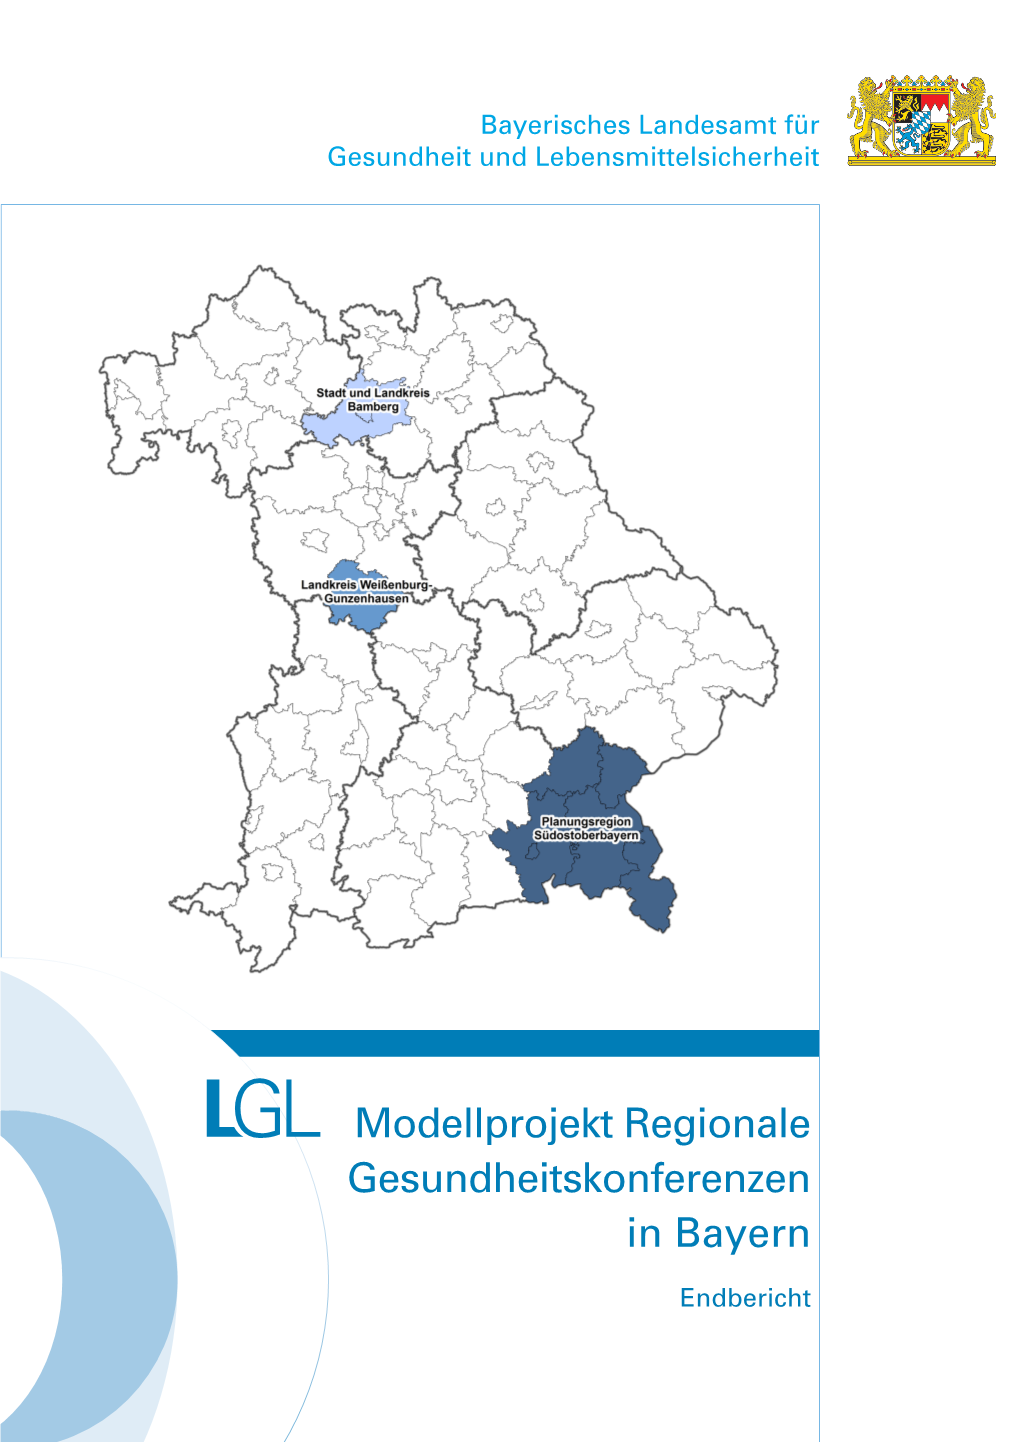 Modellprojekt Regionale Gesundheitskonferenzen in Bayern